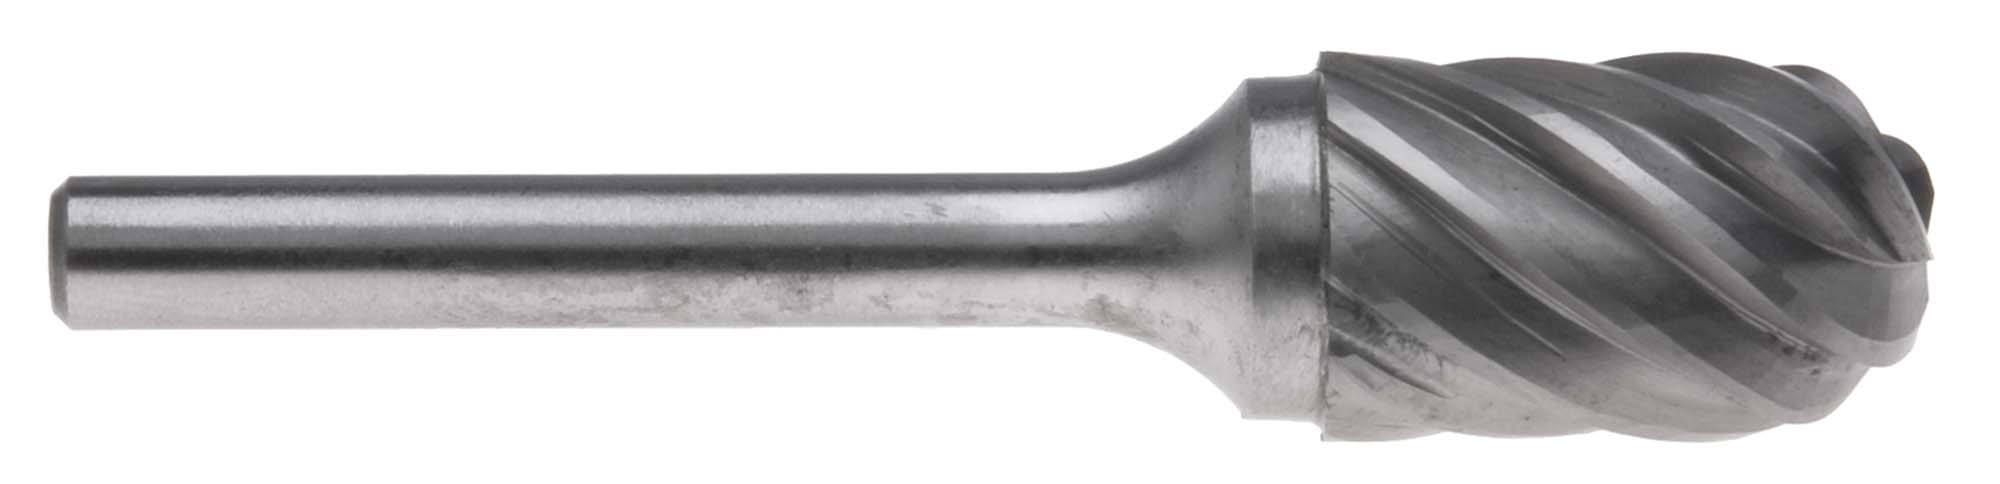 SC-3AL 3/8" Style C 1/4" Shank Carbide Burr for Aluminum